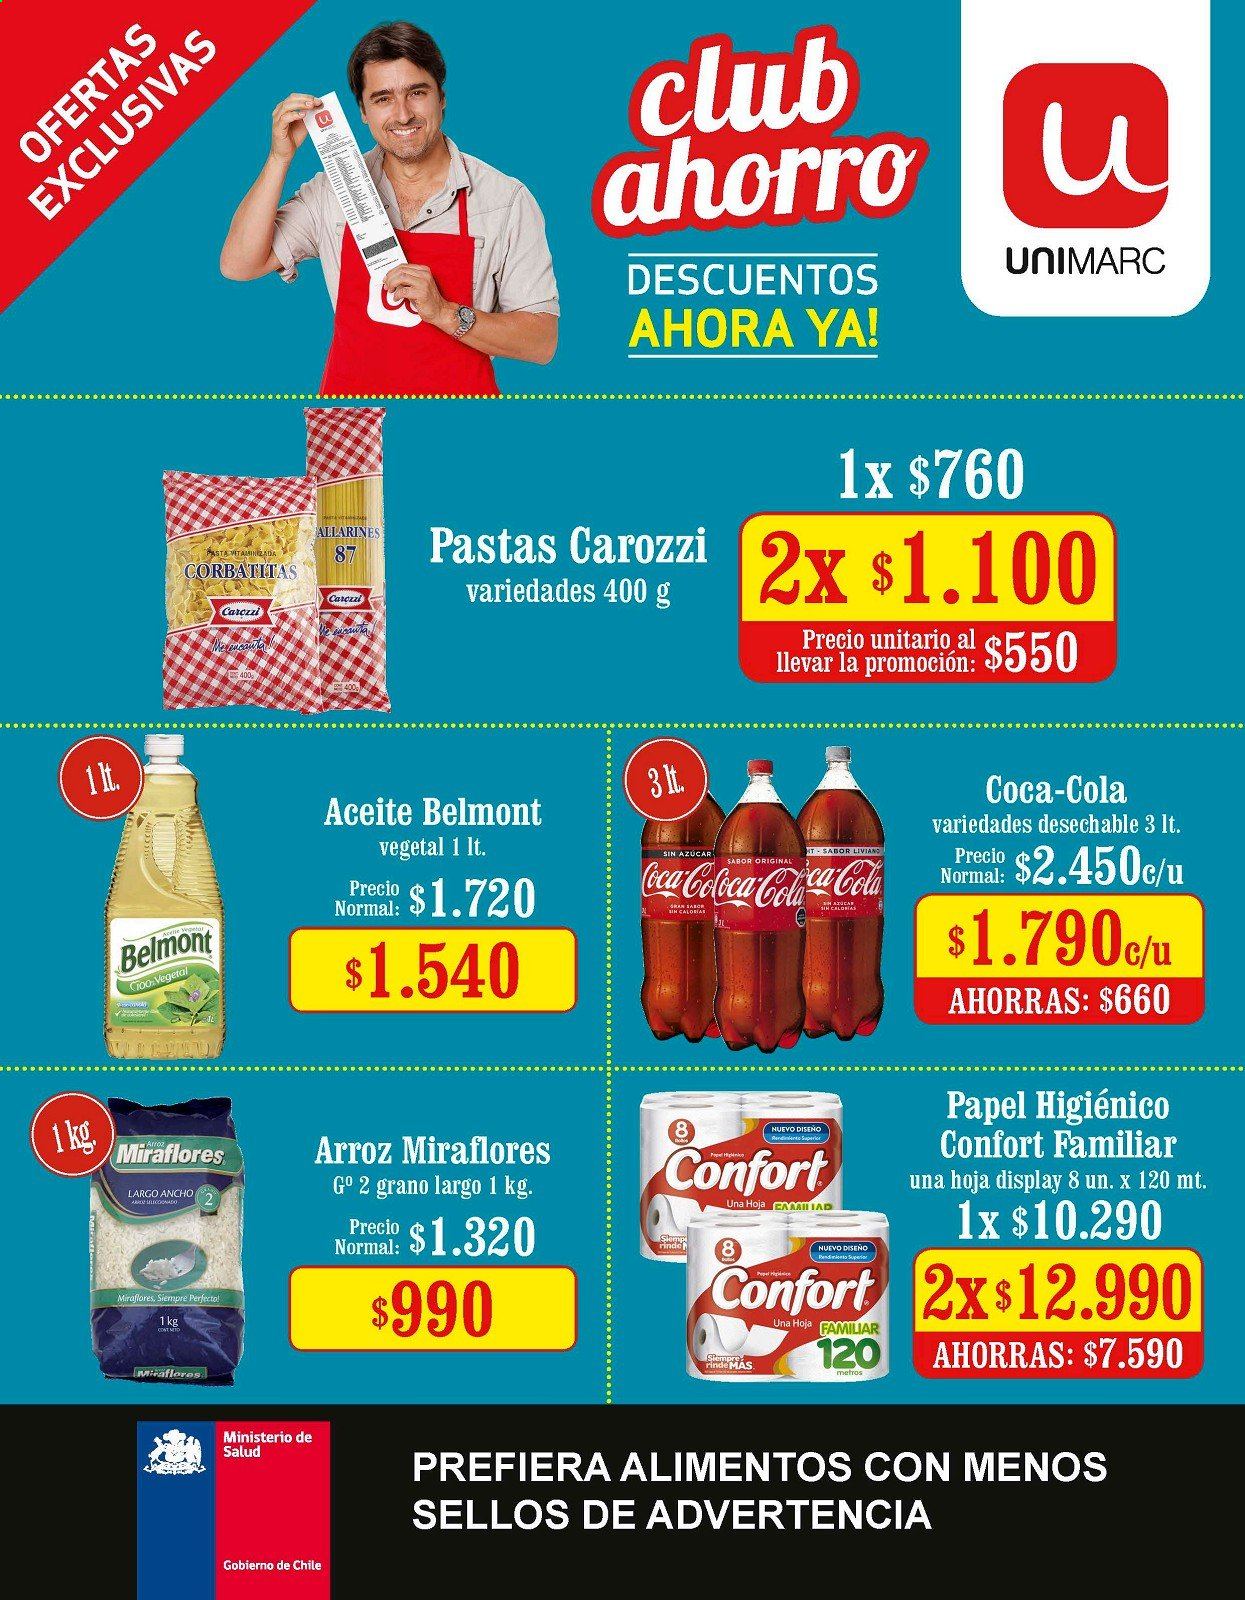 thumbnail - Catálogo Unimarc - 10.03.2021 - 06.04.2021 - Ventas - pasta, arroz, aceite, Coca-cola, papel higienico. Página 1.